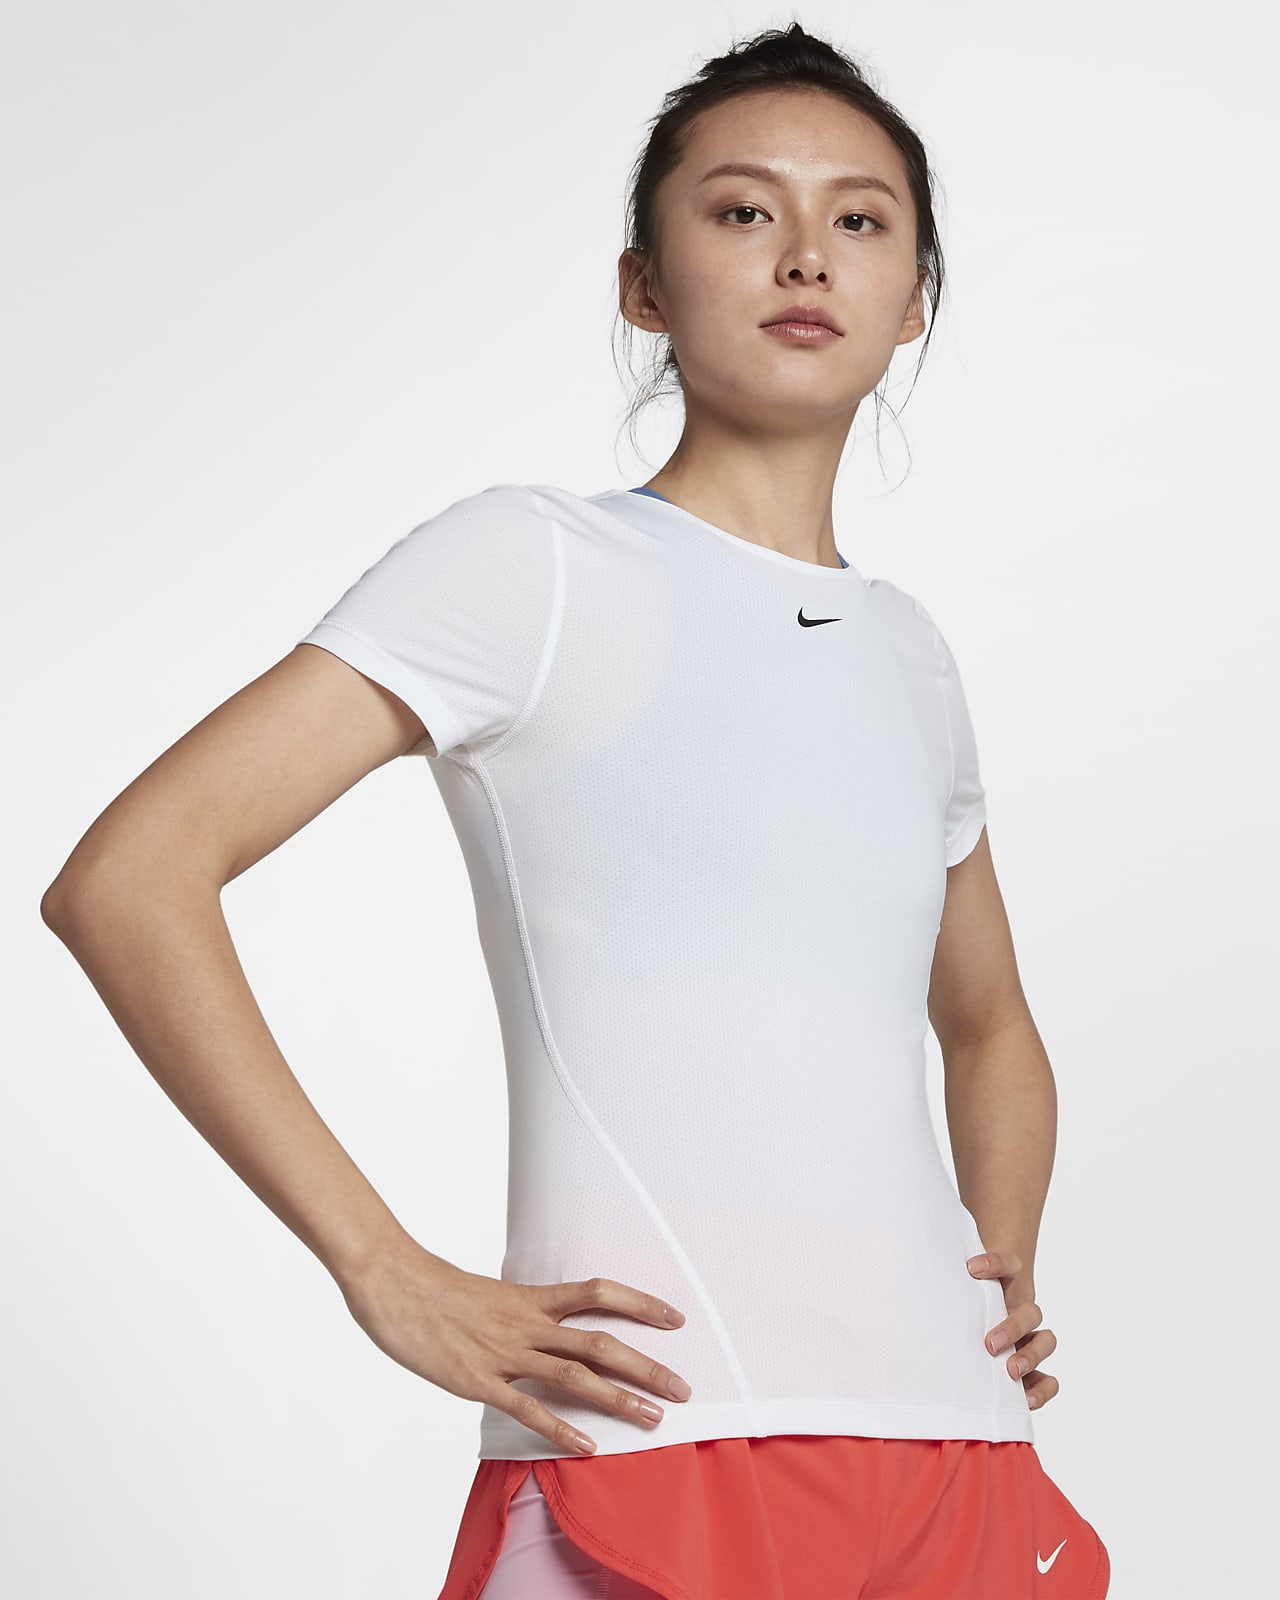 เสื้อเทรนนิ่งแขนสั้นผู้หญิง Nike Pro